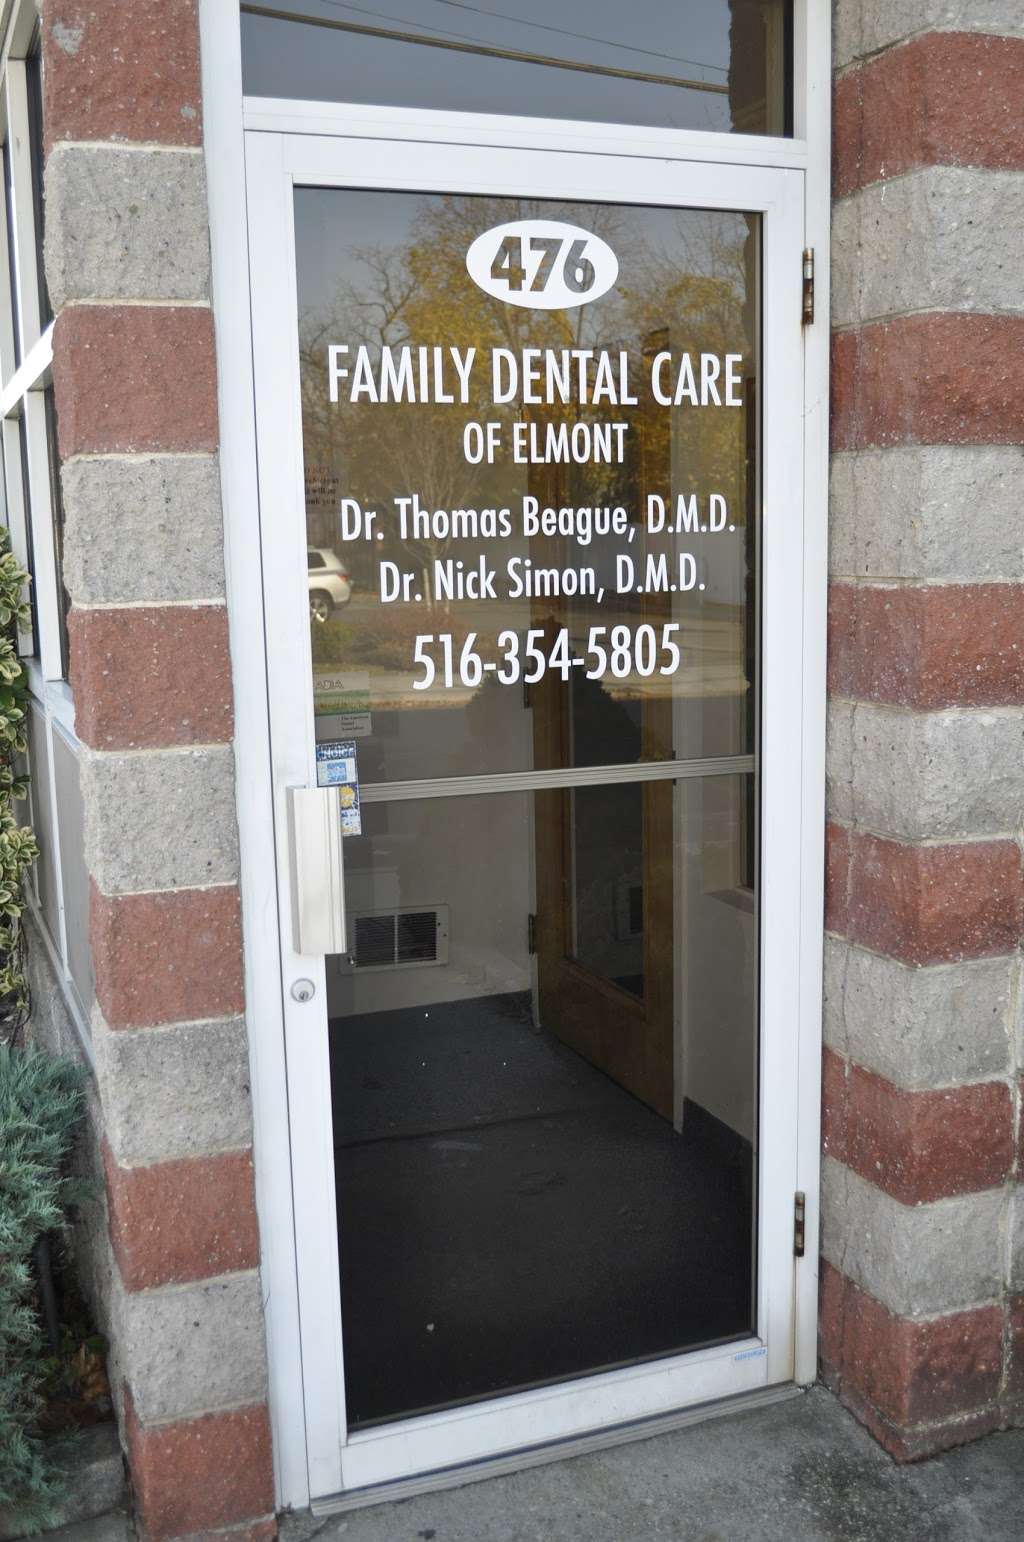 Family Dental Care of Elmont | 3530, 476 Elmont Rd, Elmont, NY 11003, USA | Phone: (516) 354-5805